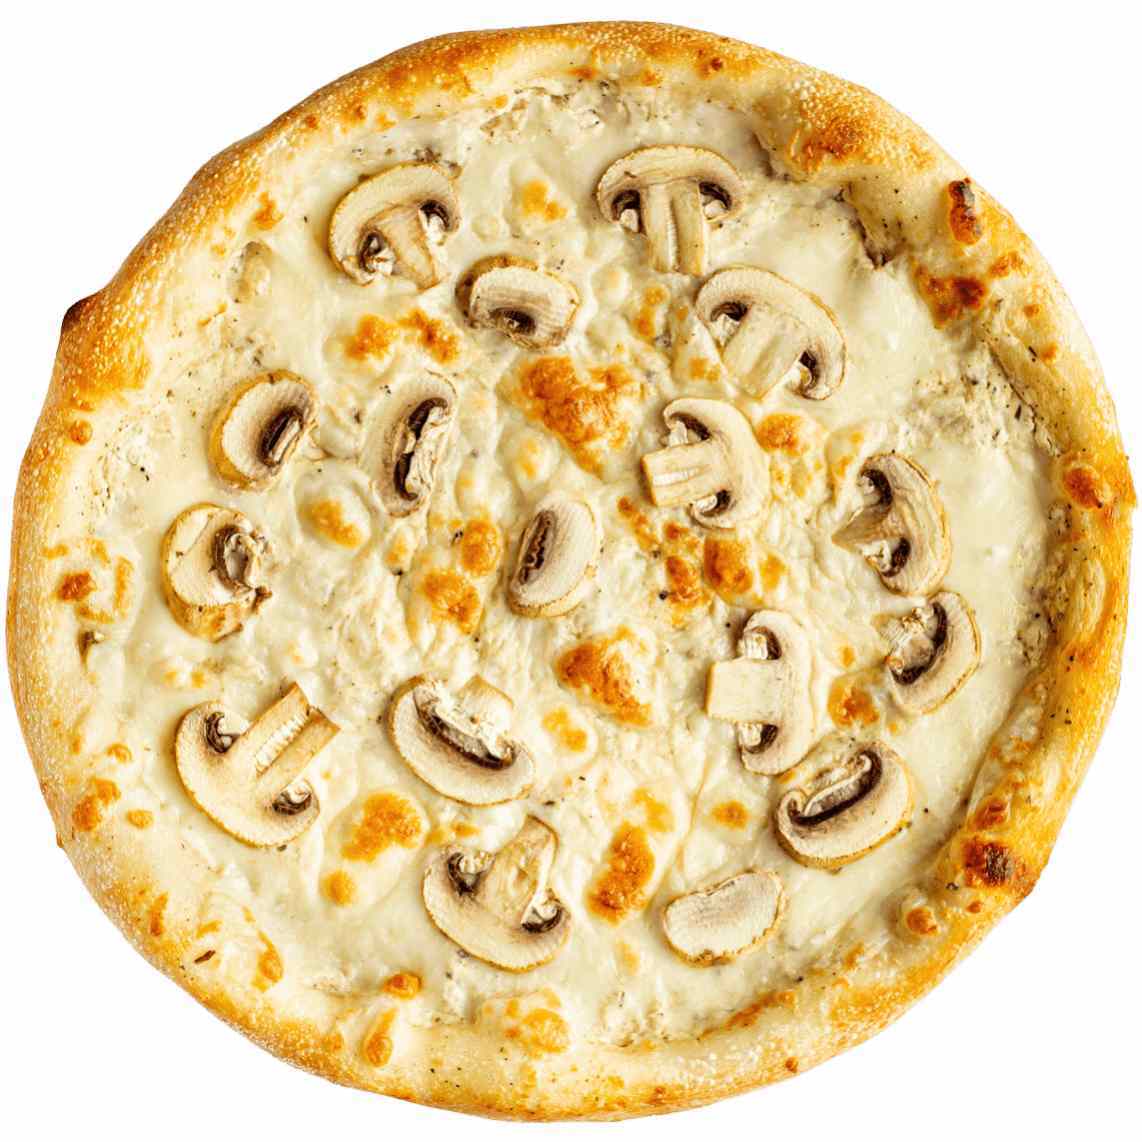 пицца грибная с белым соусом фото 48